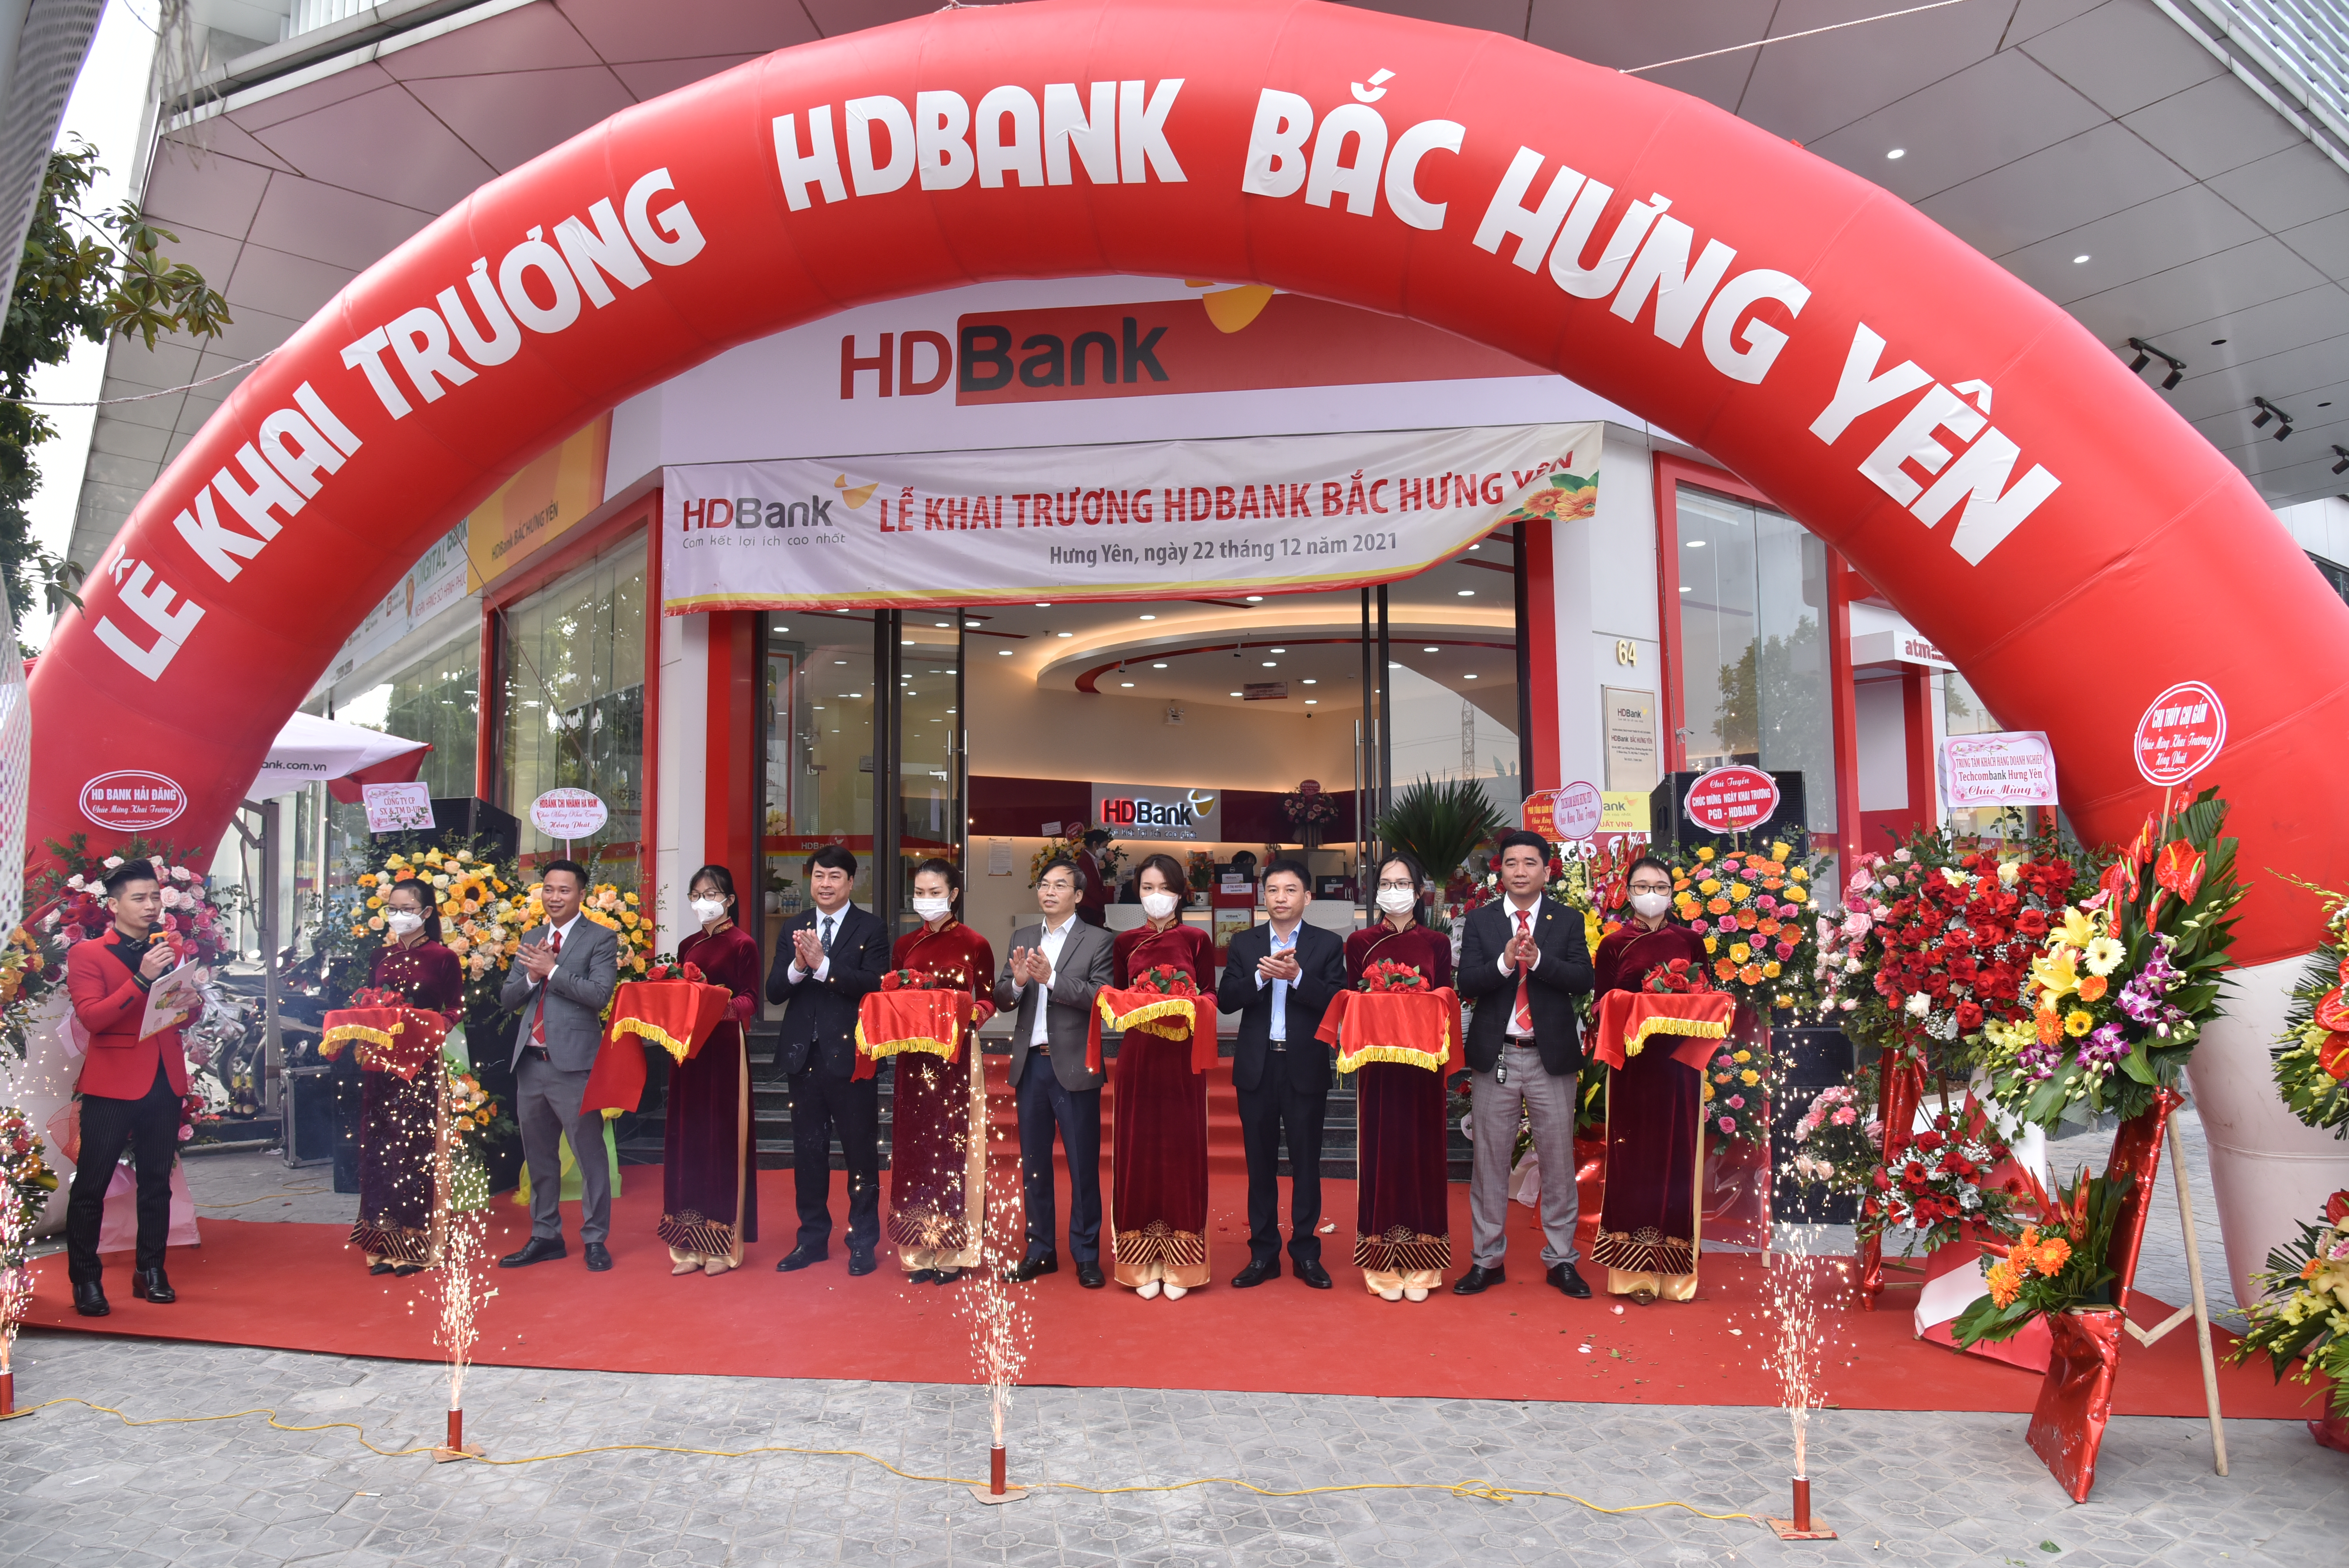 HDBank: Hãy khám phá hình ảnh về HDBank, một trong những ngân hàng hàng đầu tại Việt Nam, với các sản phẩm và dịch vụ chất lượng và tiện ích.